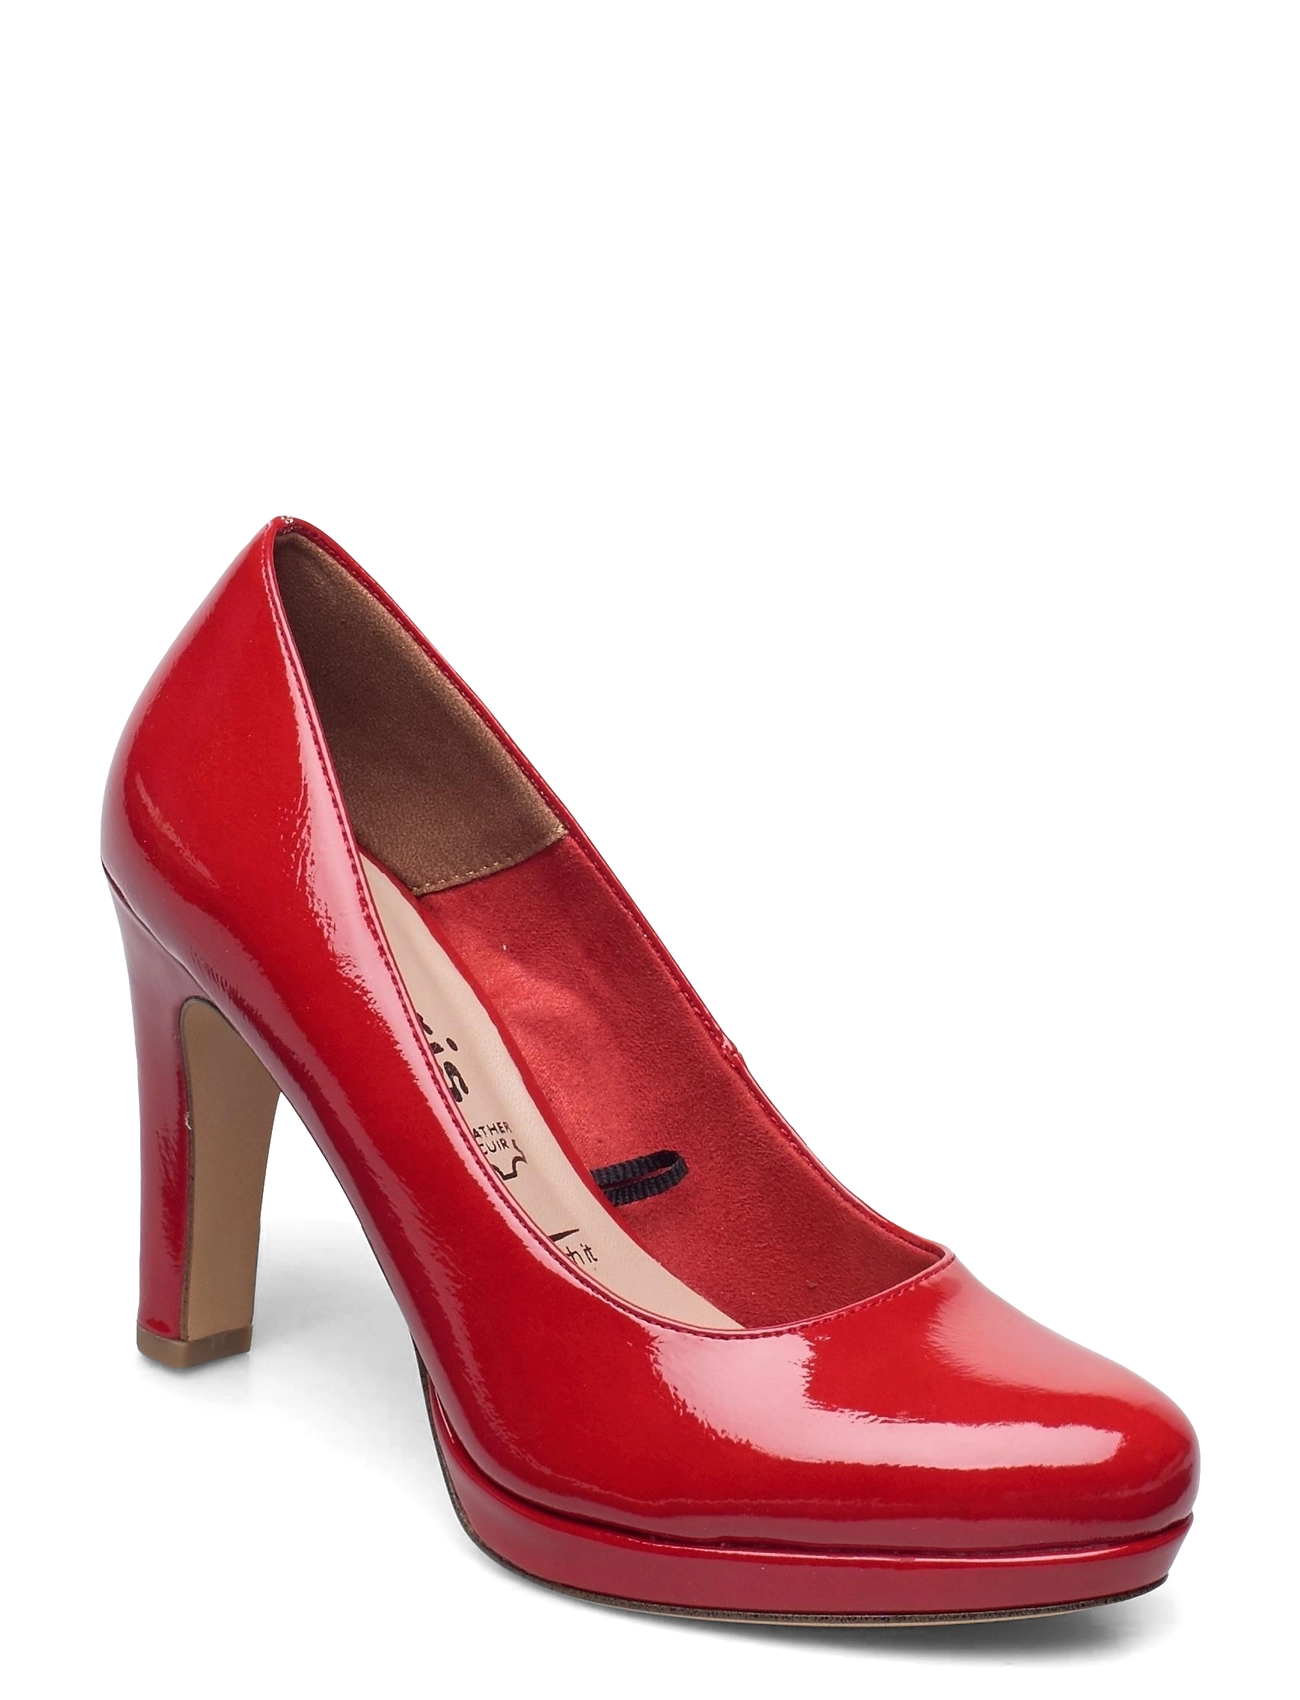 Tamaris pumps – Woms Shoe Shoes Heels Classic til dame i Sort - Pashion.dk